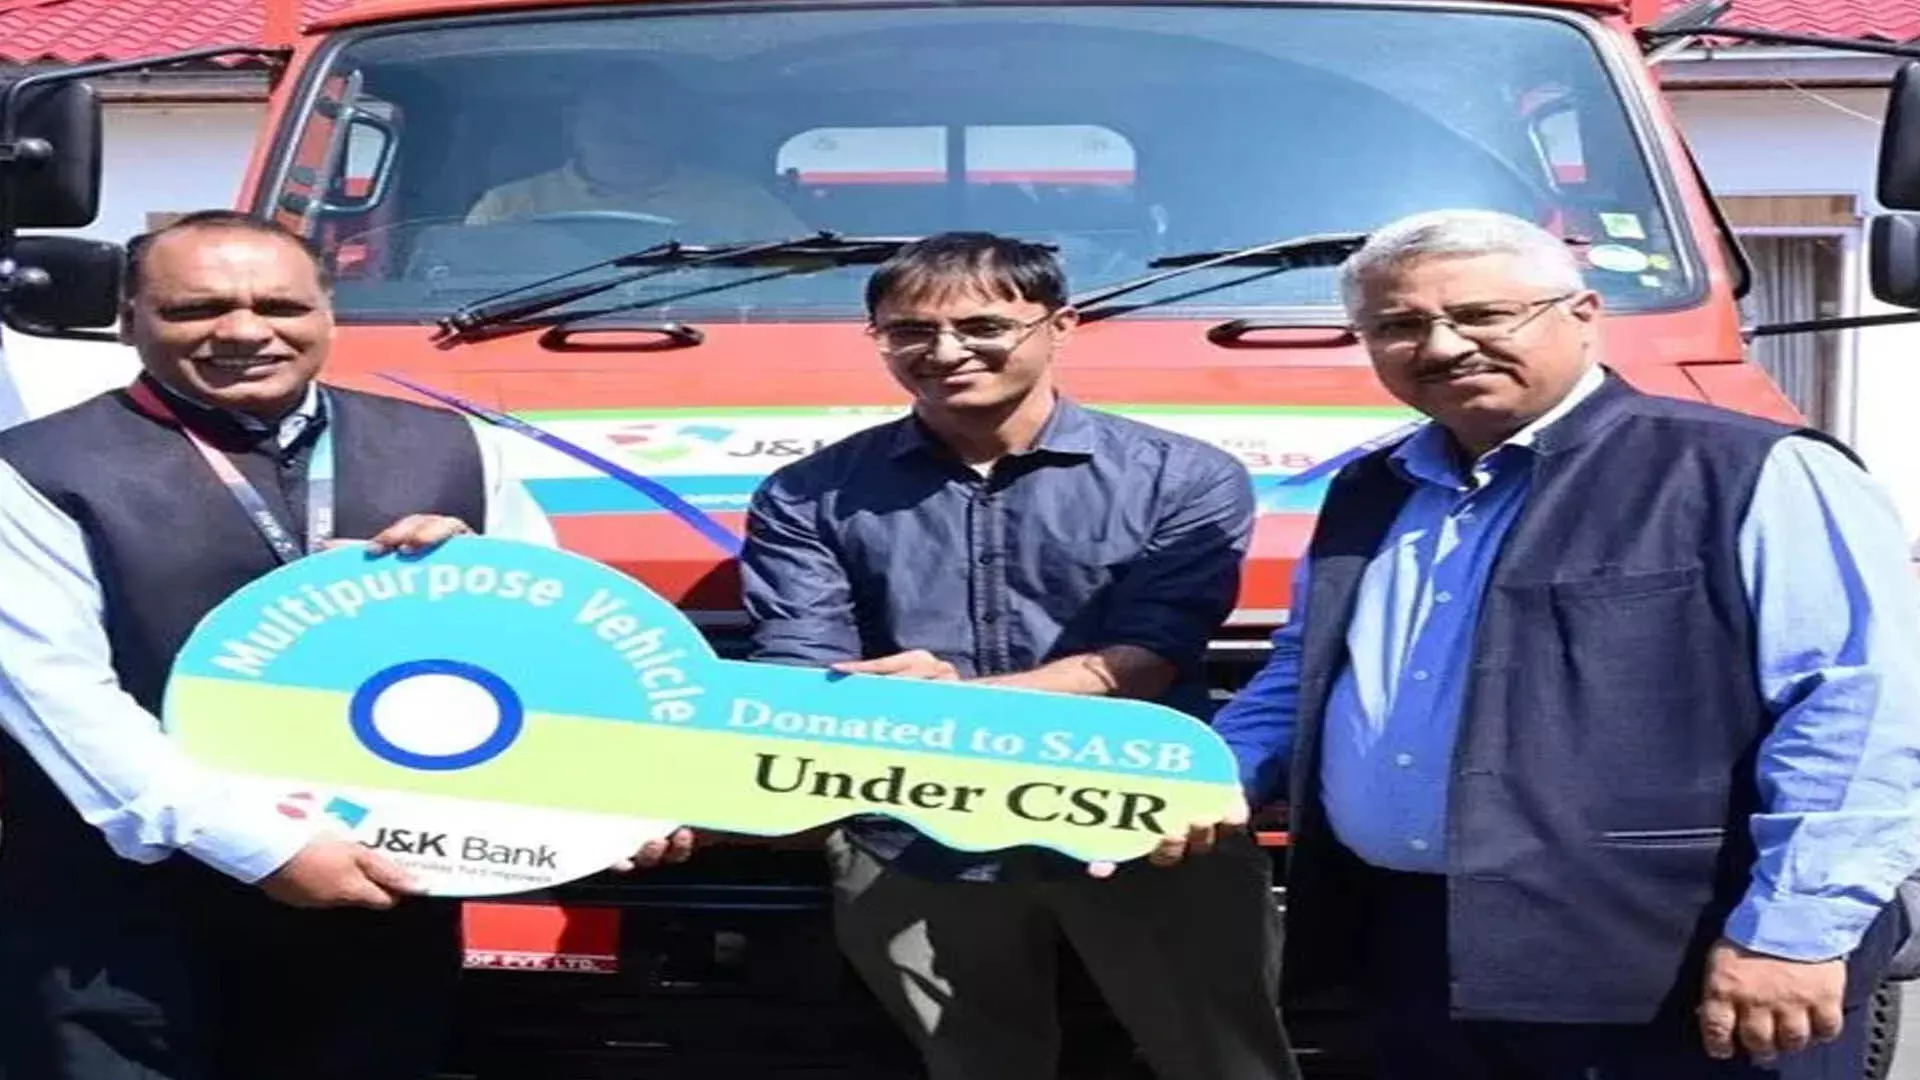 JAMMU: जेएंडके बैंक ने सीएसआर के तहत श्री अमरनाथ जी श्राइन बोर्ड को बहुउद्देश्यीय वाहन प्रदान किया